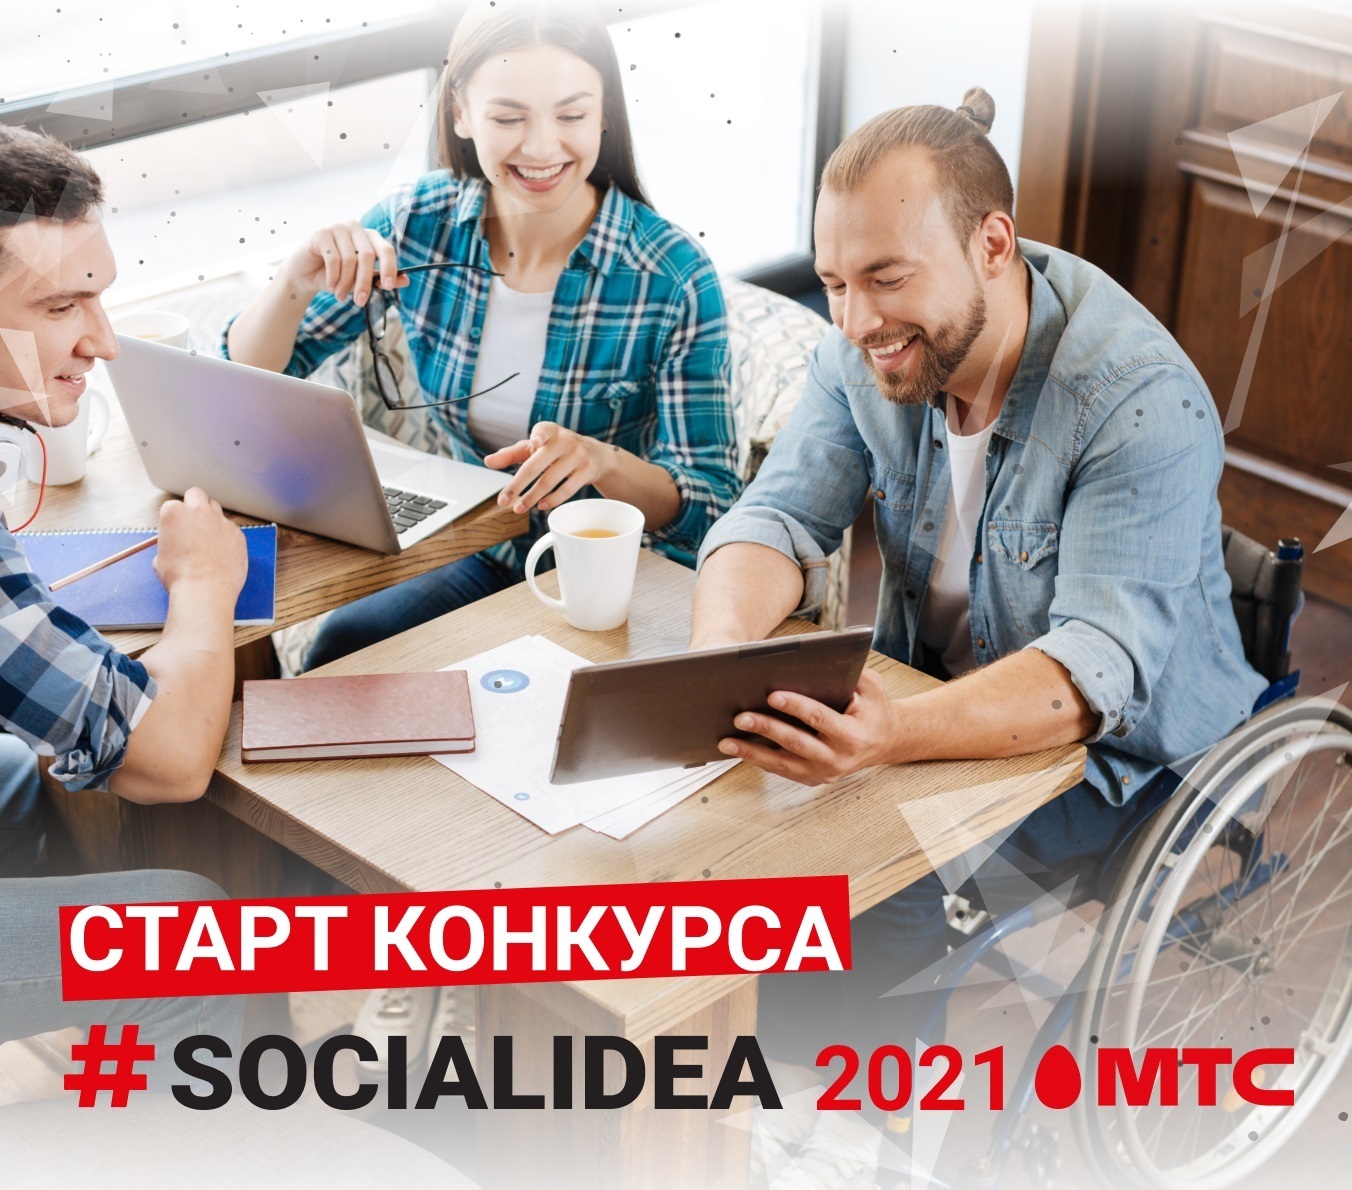 МТС объявила старт конкурса социальных цифровых решений Social Idea 2021